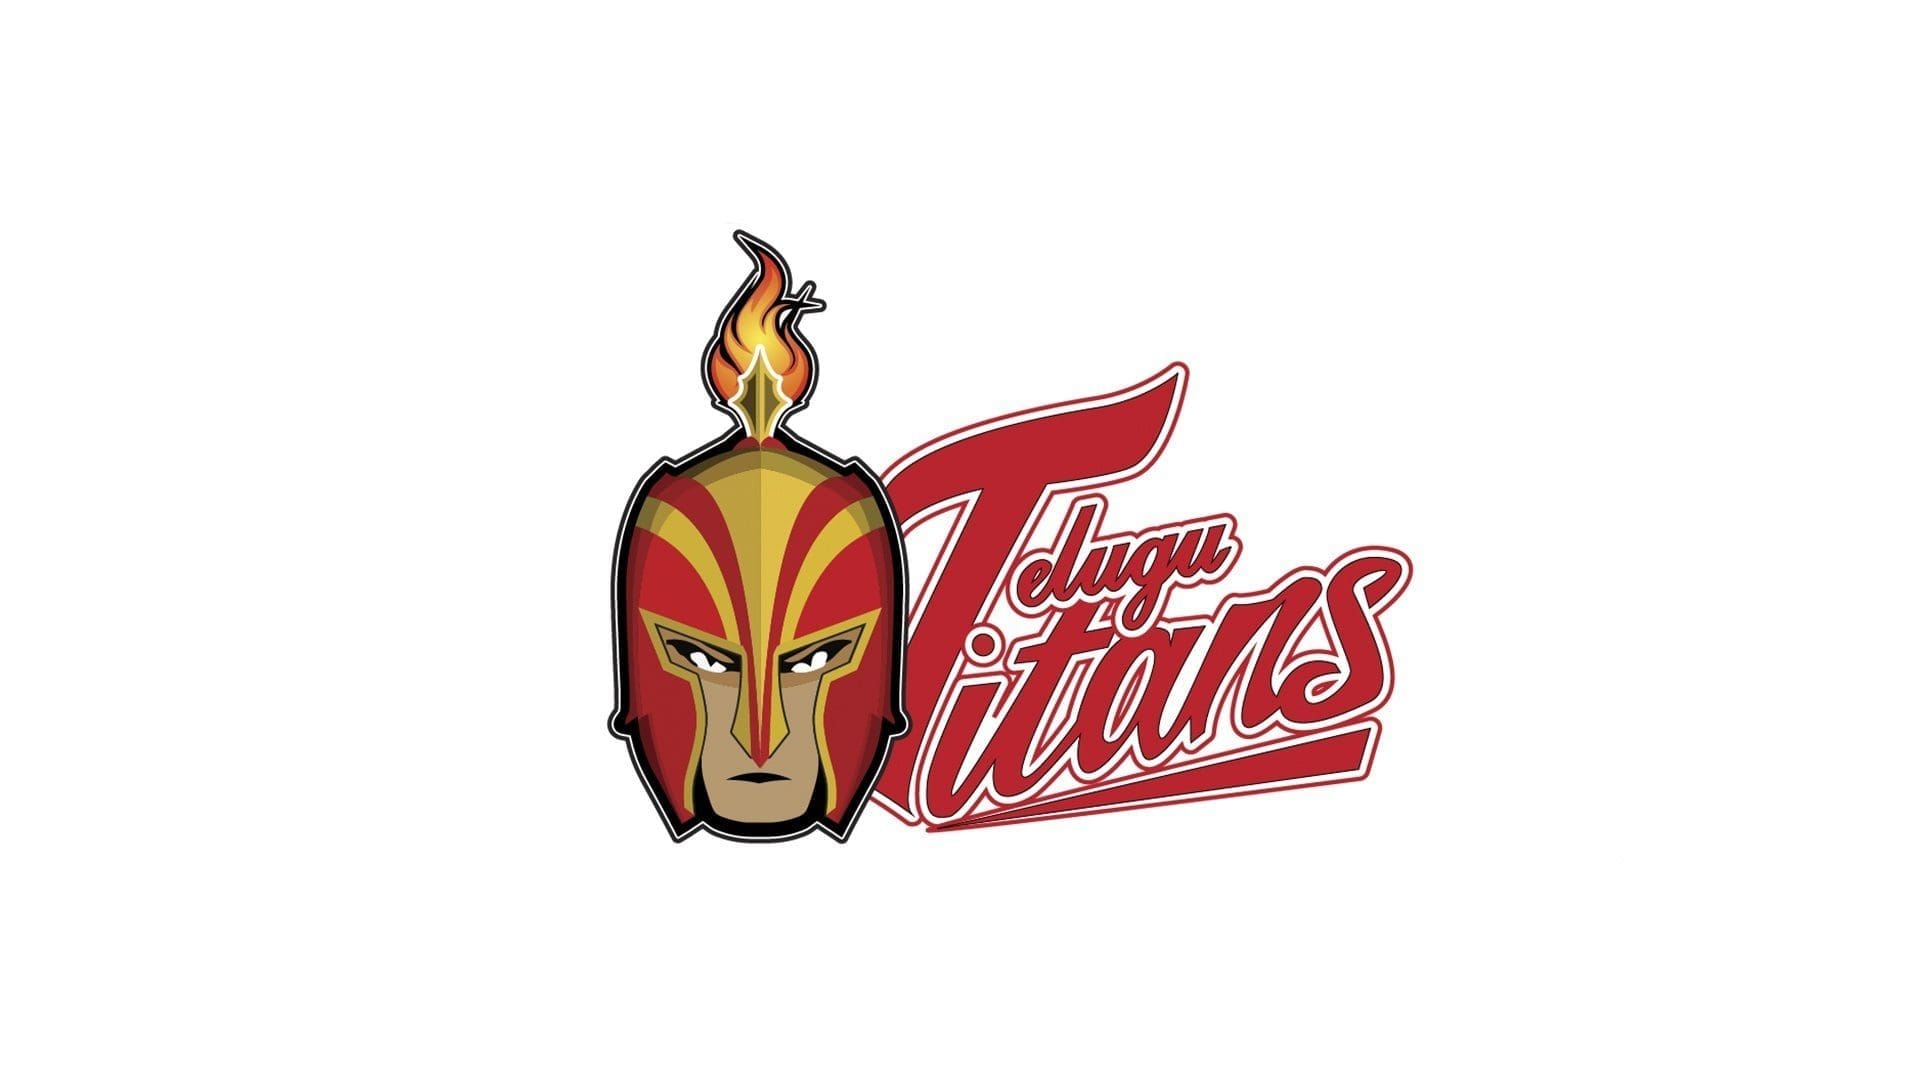 Telugu Titans Reworked Logo